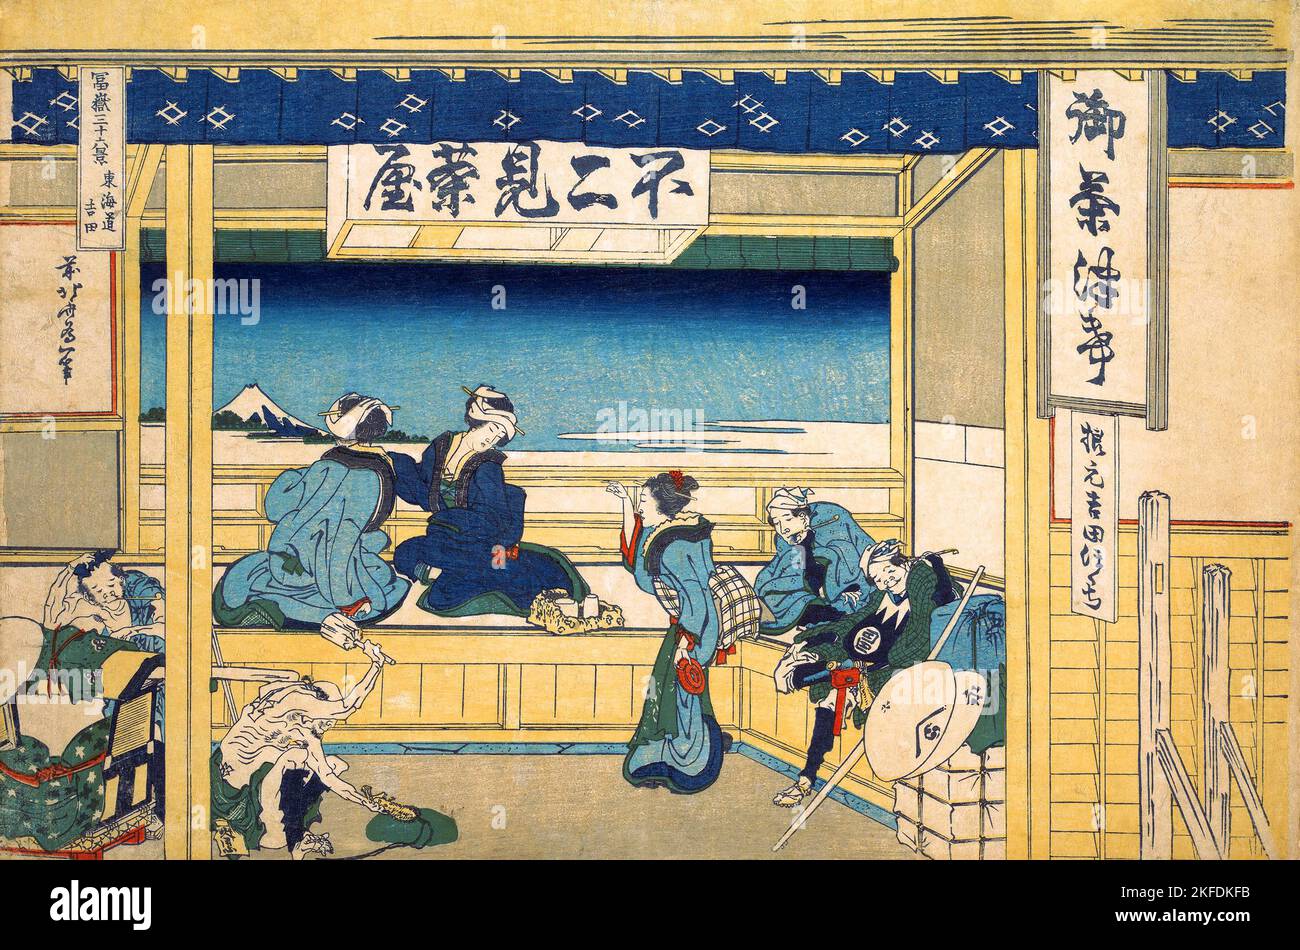 Japón: 'Yoshida en el Tokaido'. Impresión en bloque de madera ukiyo-e de la serie «Treinta y seis vistas del monte Fuji» de Katsushika Hokusai (31 de octubre de 1760 - 10 de mayo de 1849), 1830. «Treinta y seis vistas del monte Fuji» es una serie «ukiyo-e» de grabados en madera del artista japonés Katsushika Hokusai. La serie muestra el Monte Fuji en diferentes estaciones y condiciones climáticas desde diversos lugares y distancias. En realidad consiste en 46 impresiones creadas entre 1826 y 1833. Los primeros 36 fueron incluidos en la publicación original y, debido a su popularidad, 10 más fueron añadidos después de la publicación original. Foto de stock